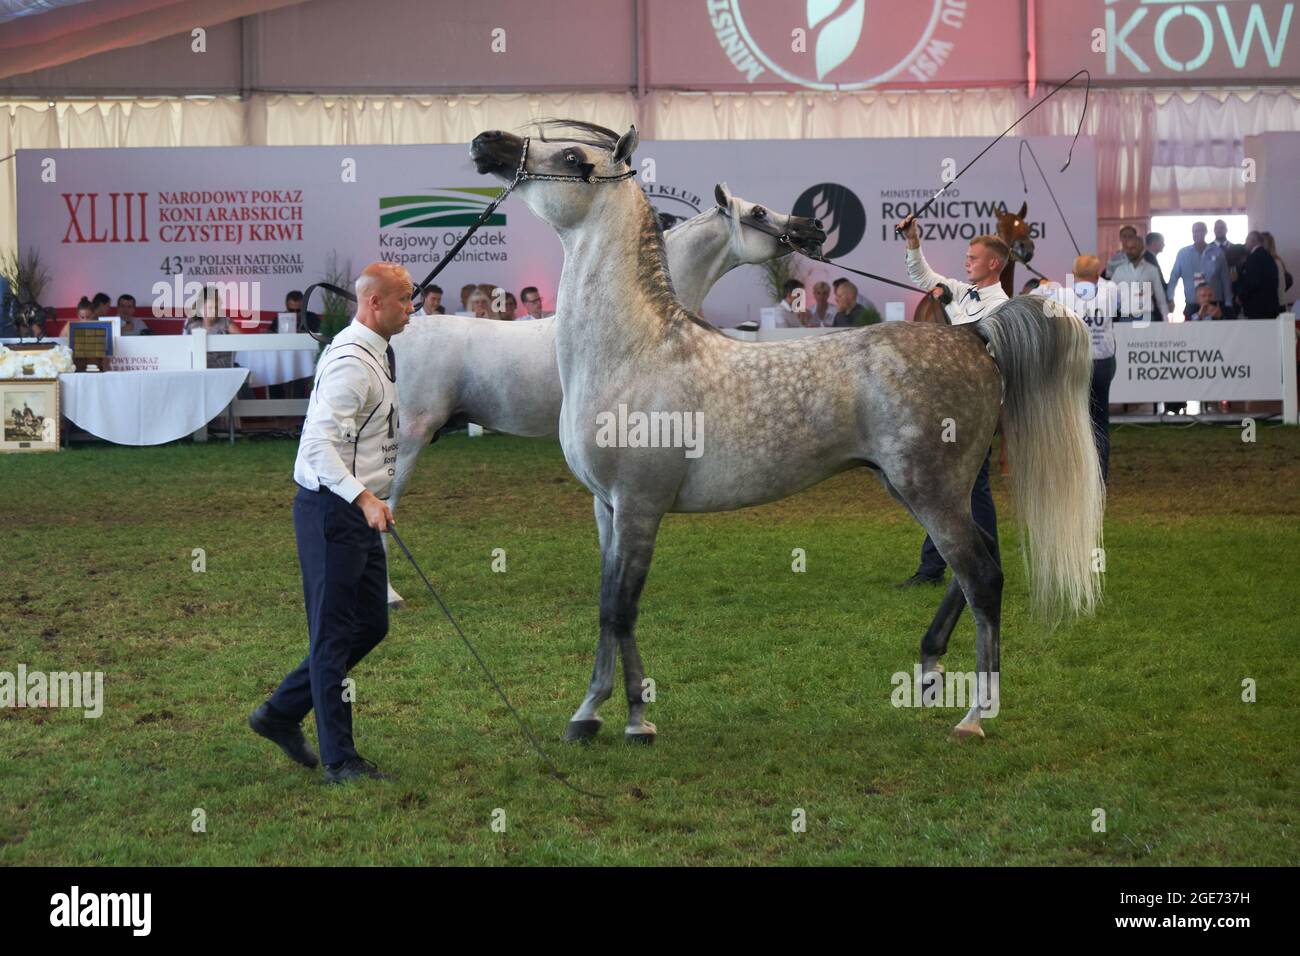 'Pride of Poland 2021' - jährliches Fest der Weltklasse-arabischen Pferde. Als eine lange Tradition wurde das Fest mit der Versteigerung von reinen blutigen arabischen Pferden aus dem Gestüt in Janów Podlaski gefeiert, das einige der schönsten und teuersten reinen gezüchteten arabischen Pferde der Welt beherbergt. Stockfoto